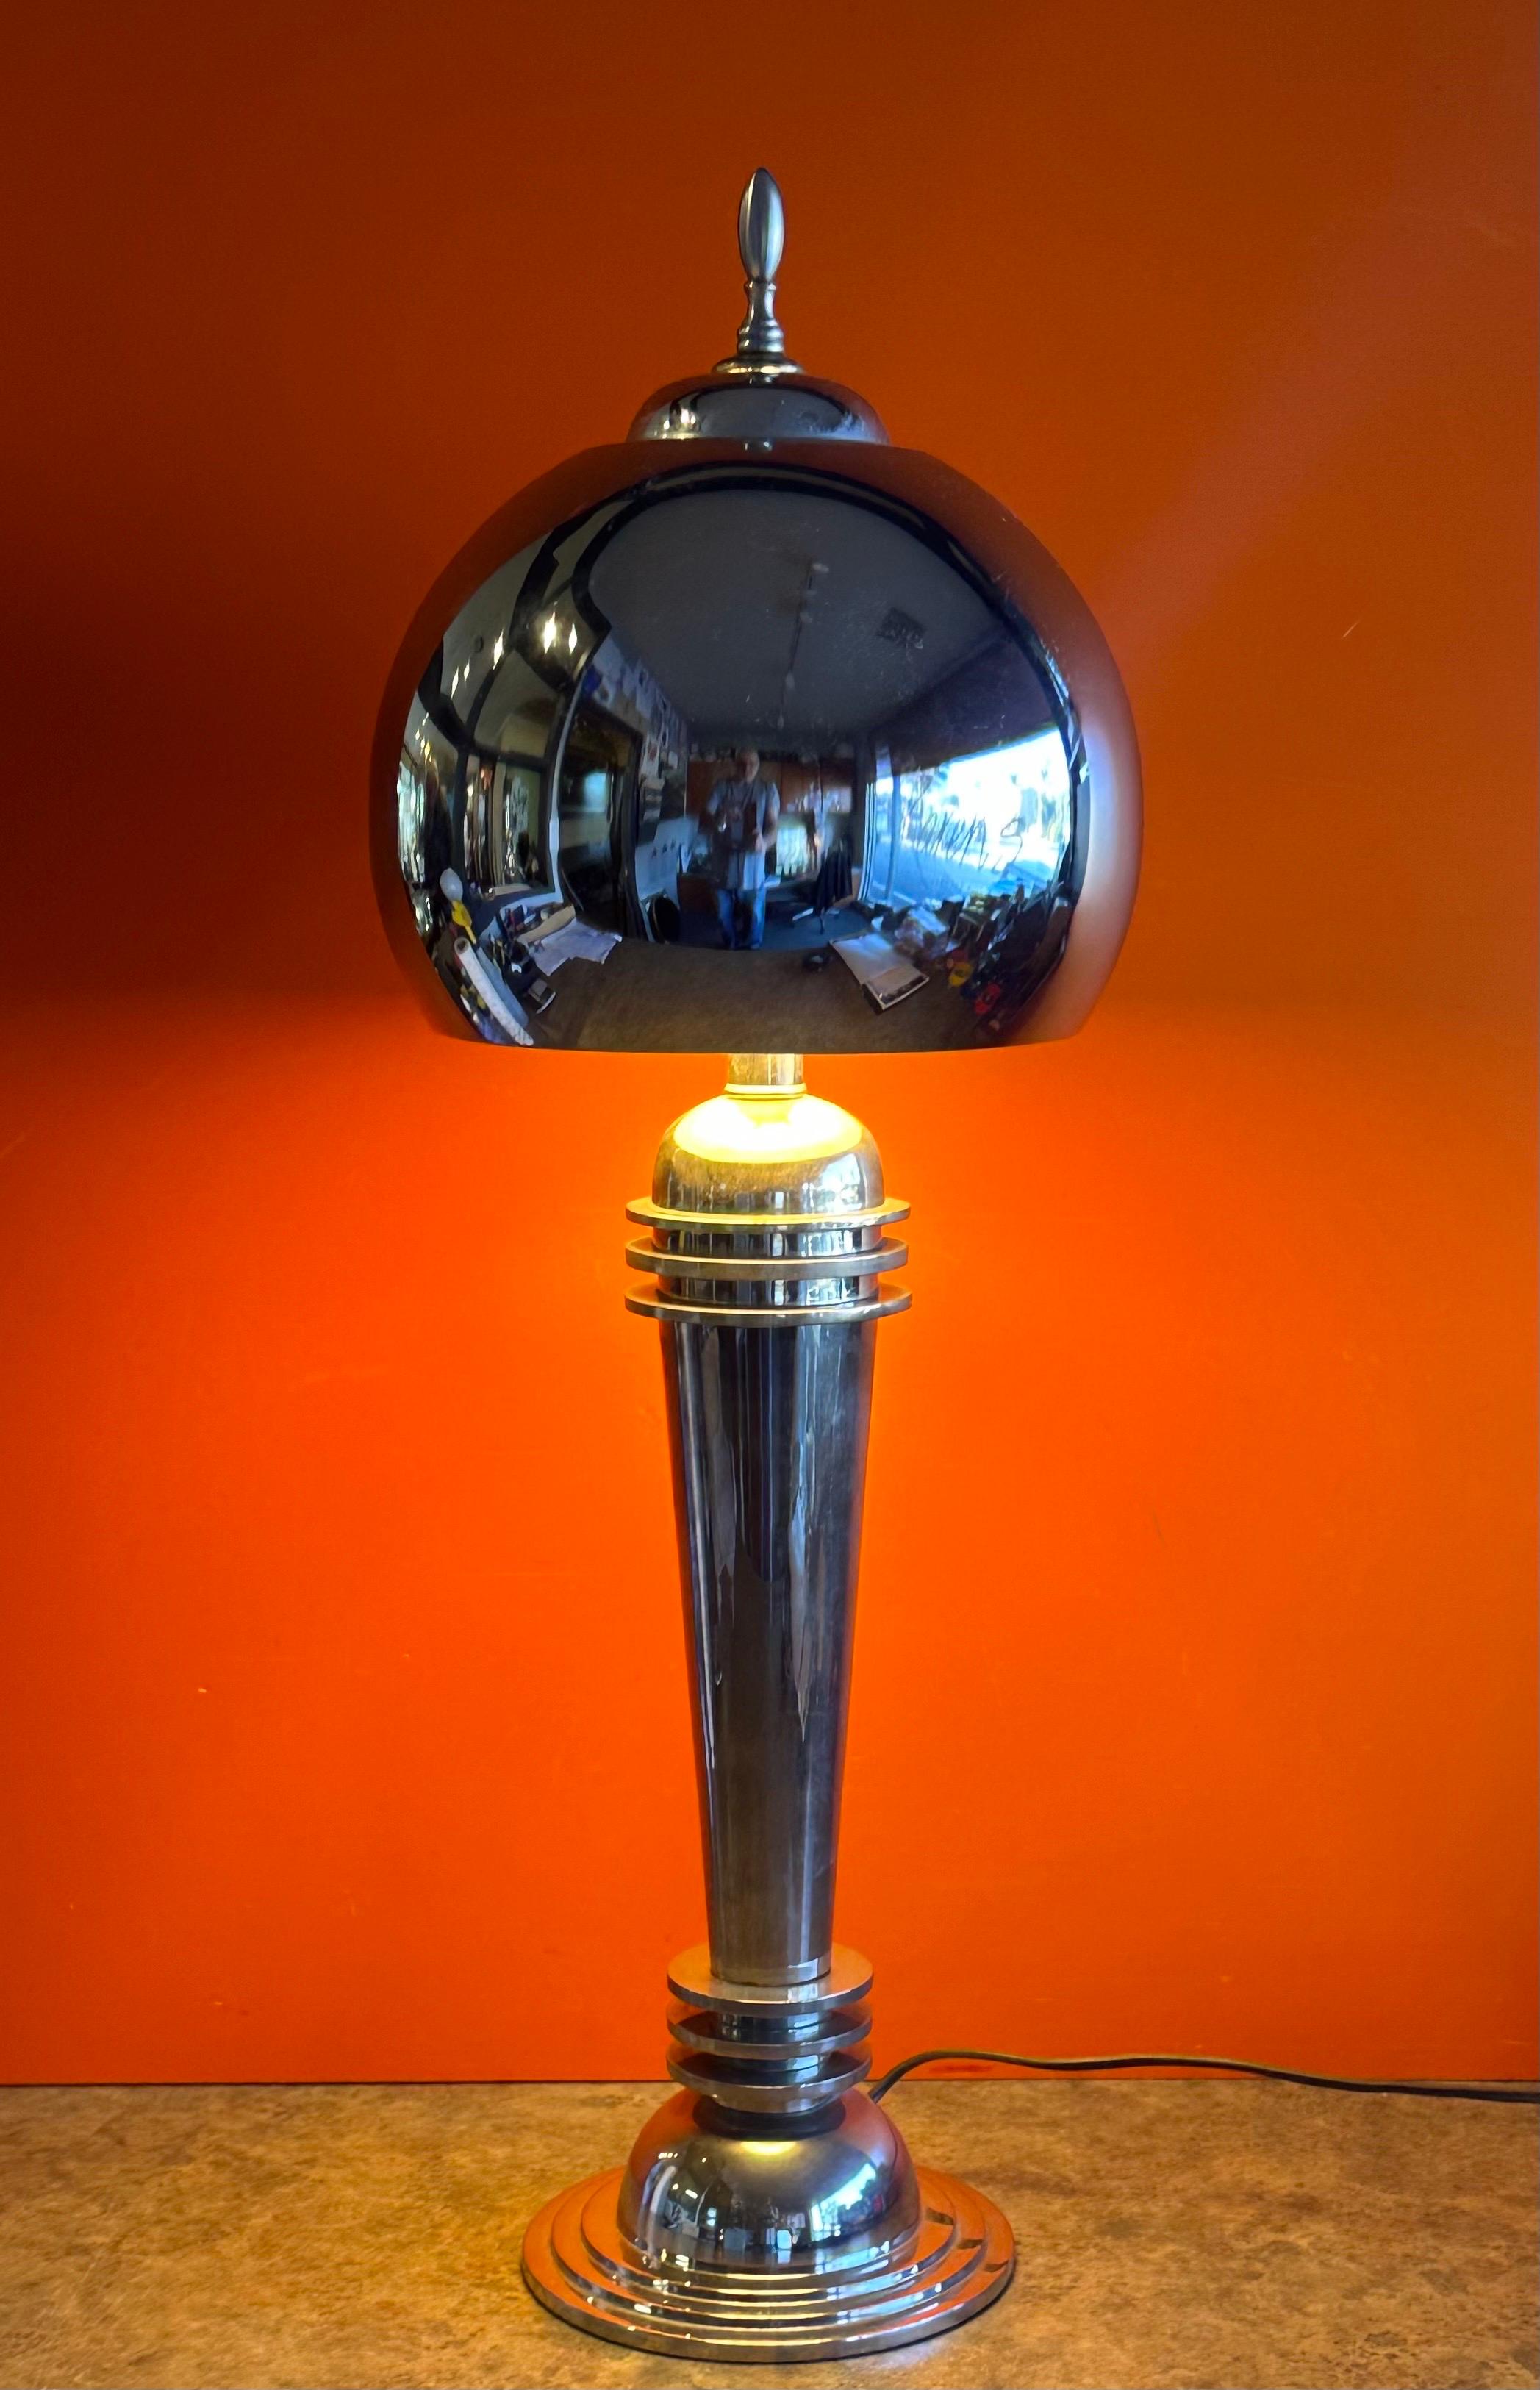 Très belle lampe de table art déco en chrome de l'époque des machines, vers les années 1930. La lampe est en bon état de fonctionnement et mesure 9.5 